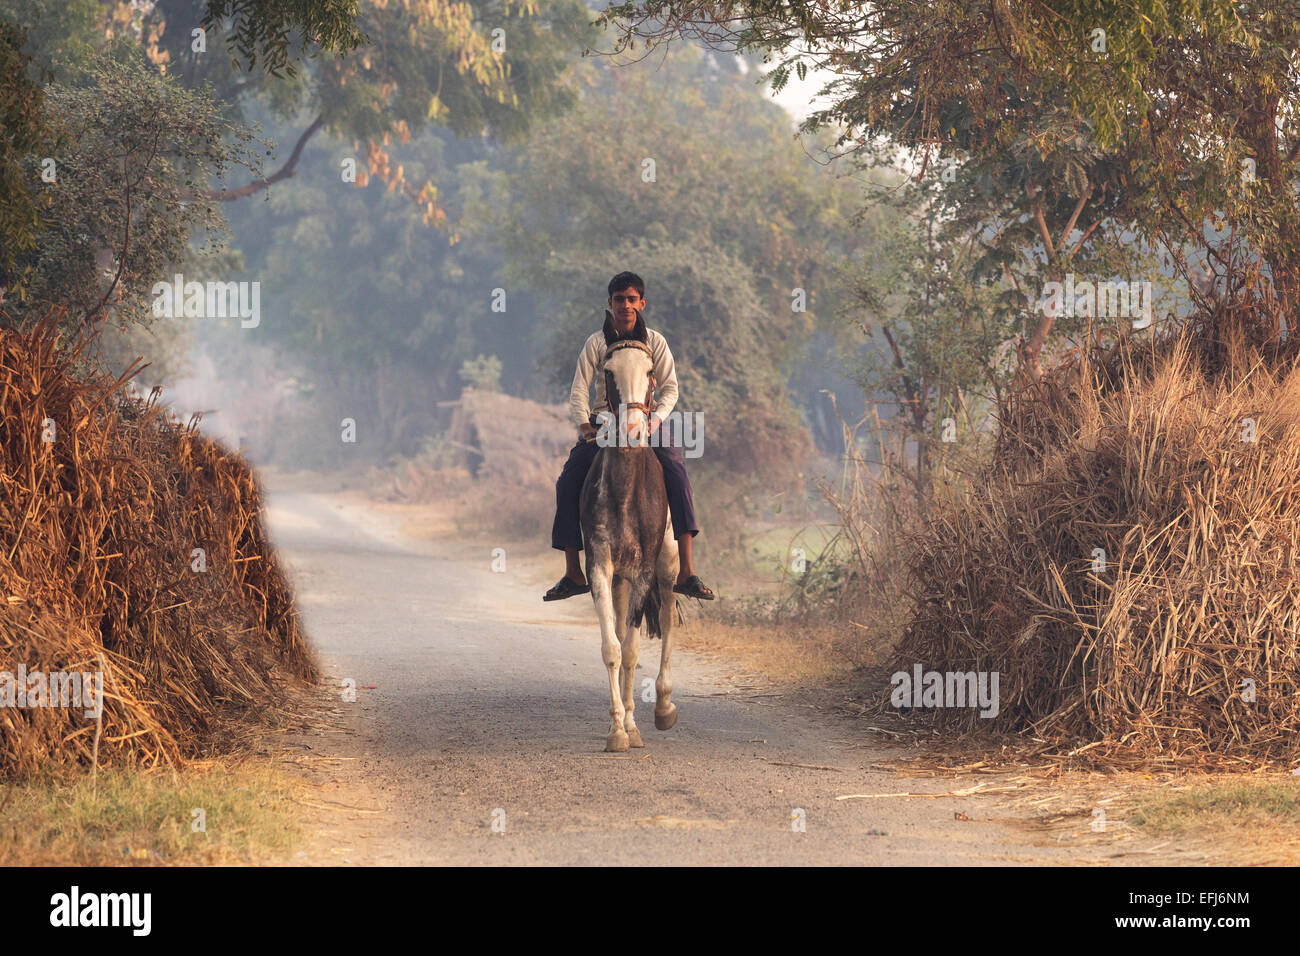 Indien, Agra, Uttar Pradesh Dorf junge Mann auf einem Pferd in ländlicher Umgebung Stockfoto